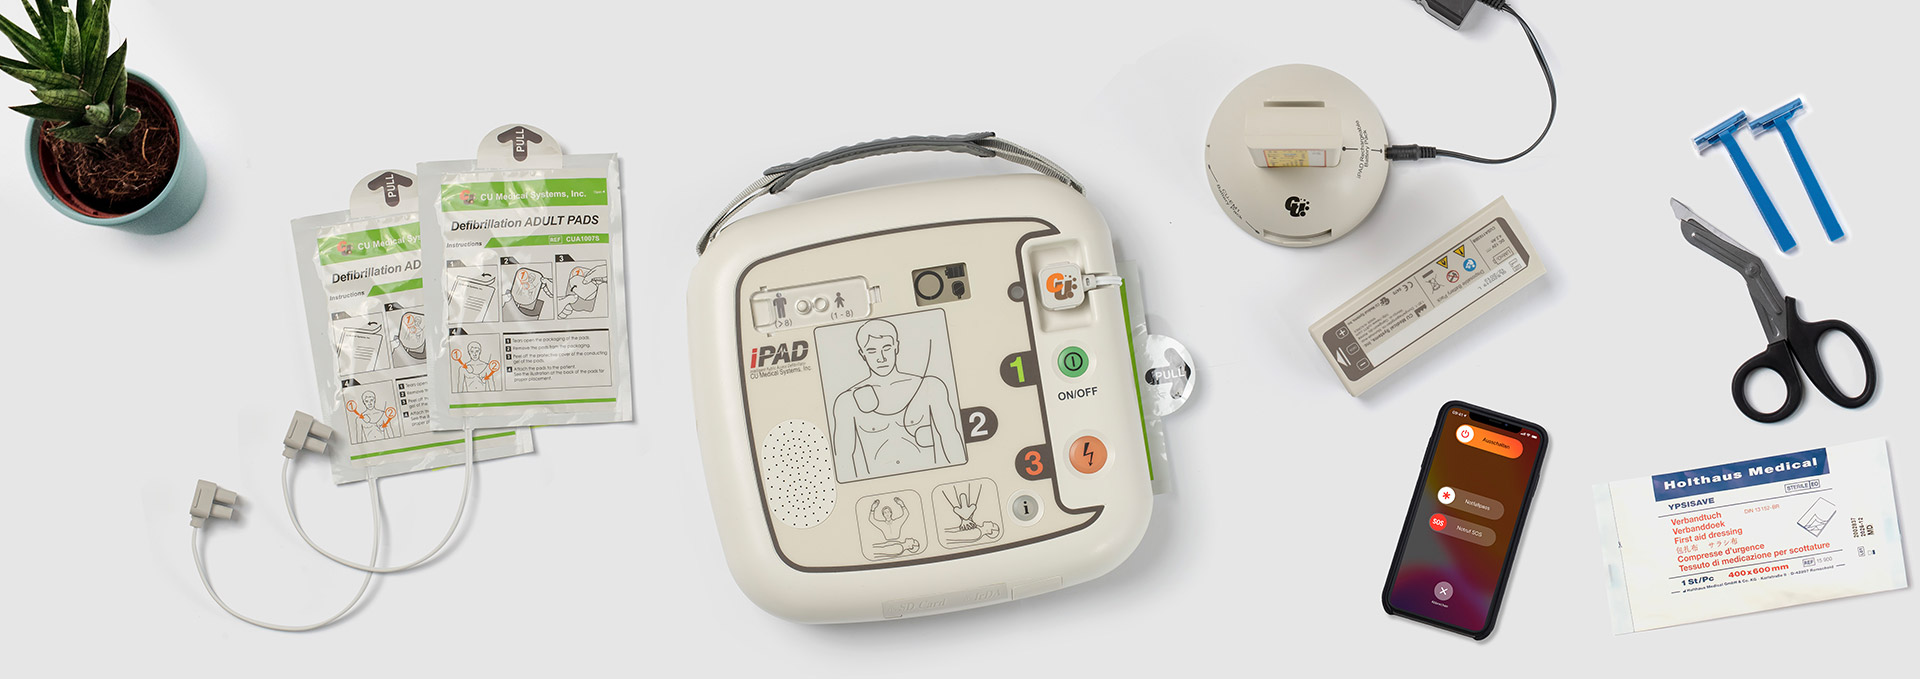 Sicherheitstechnische Kontrolle (STK) Defibrillator